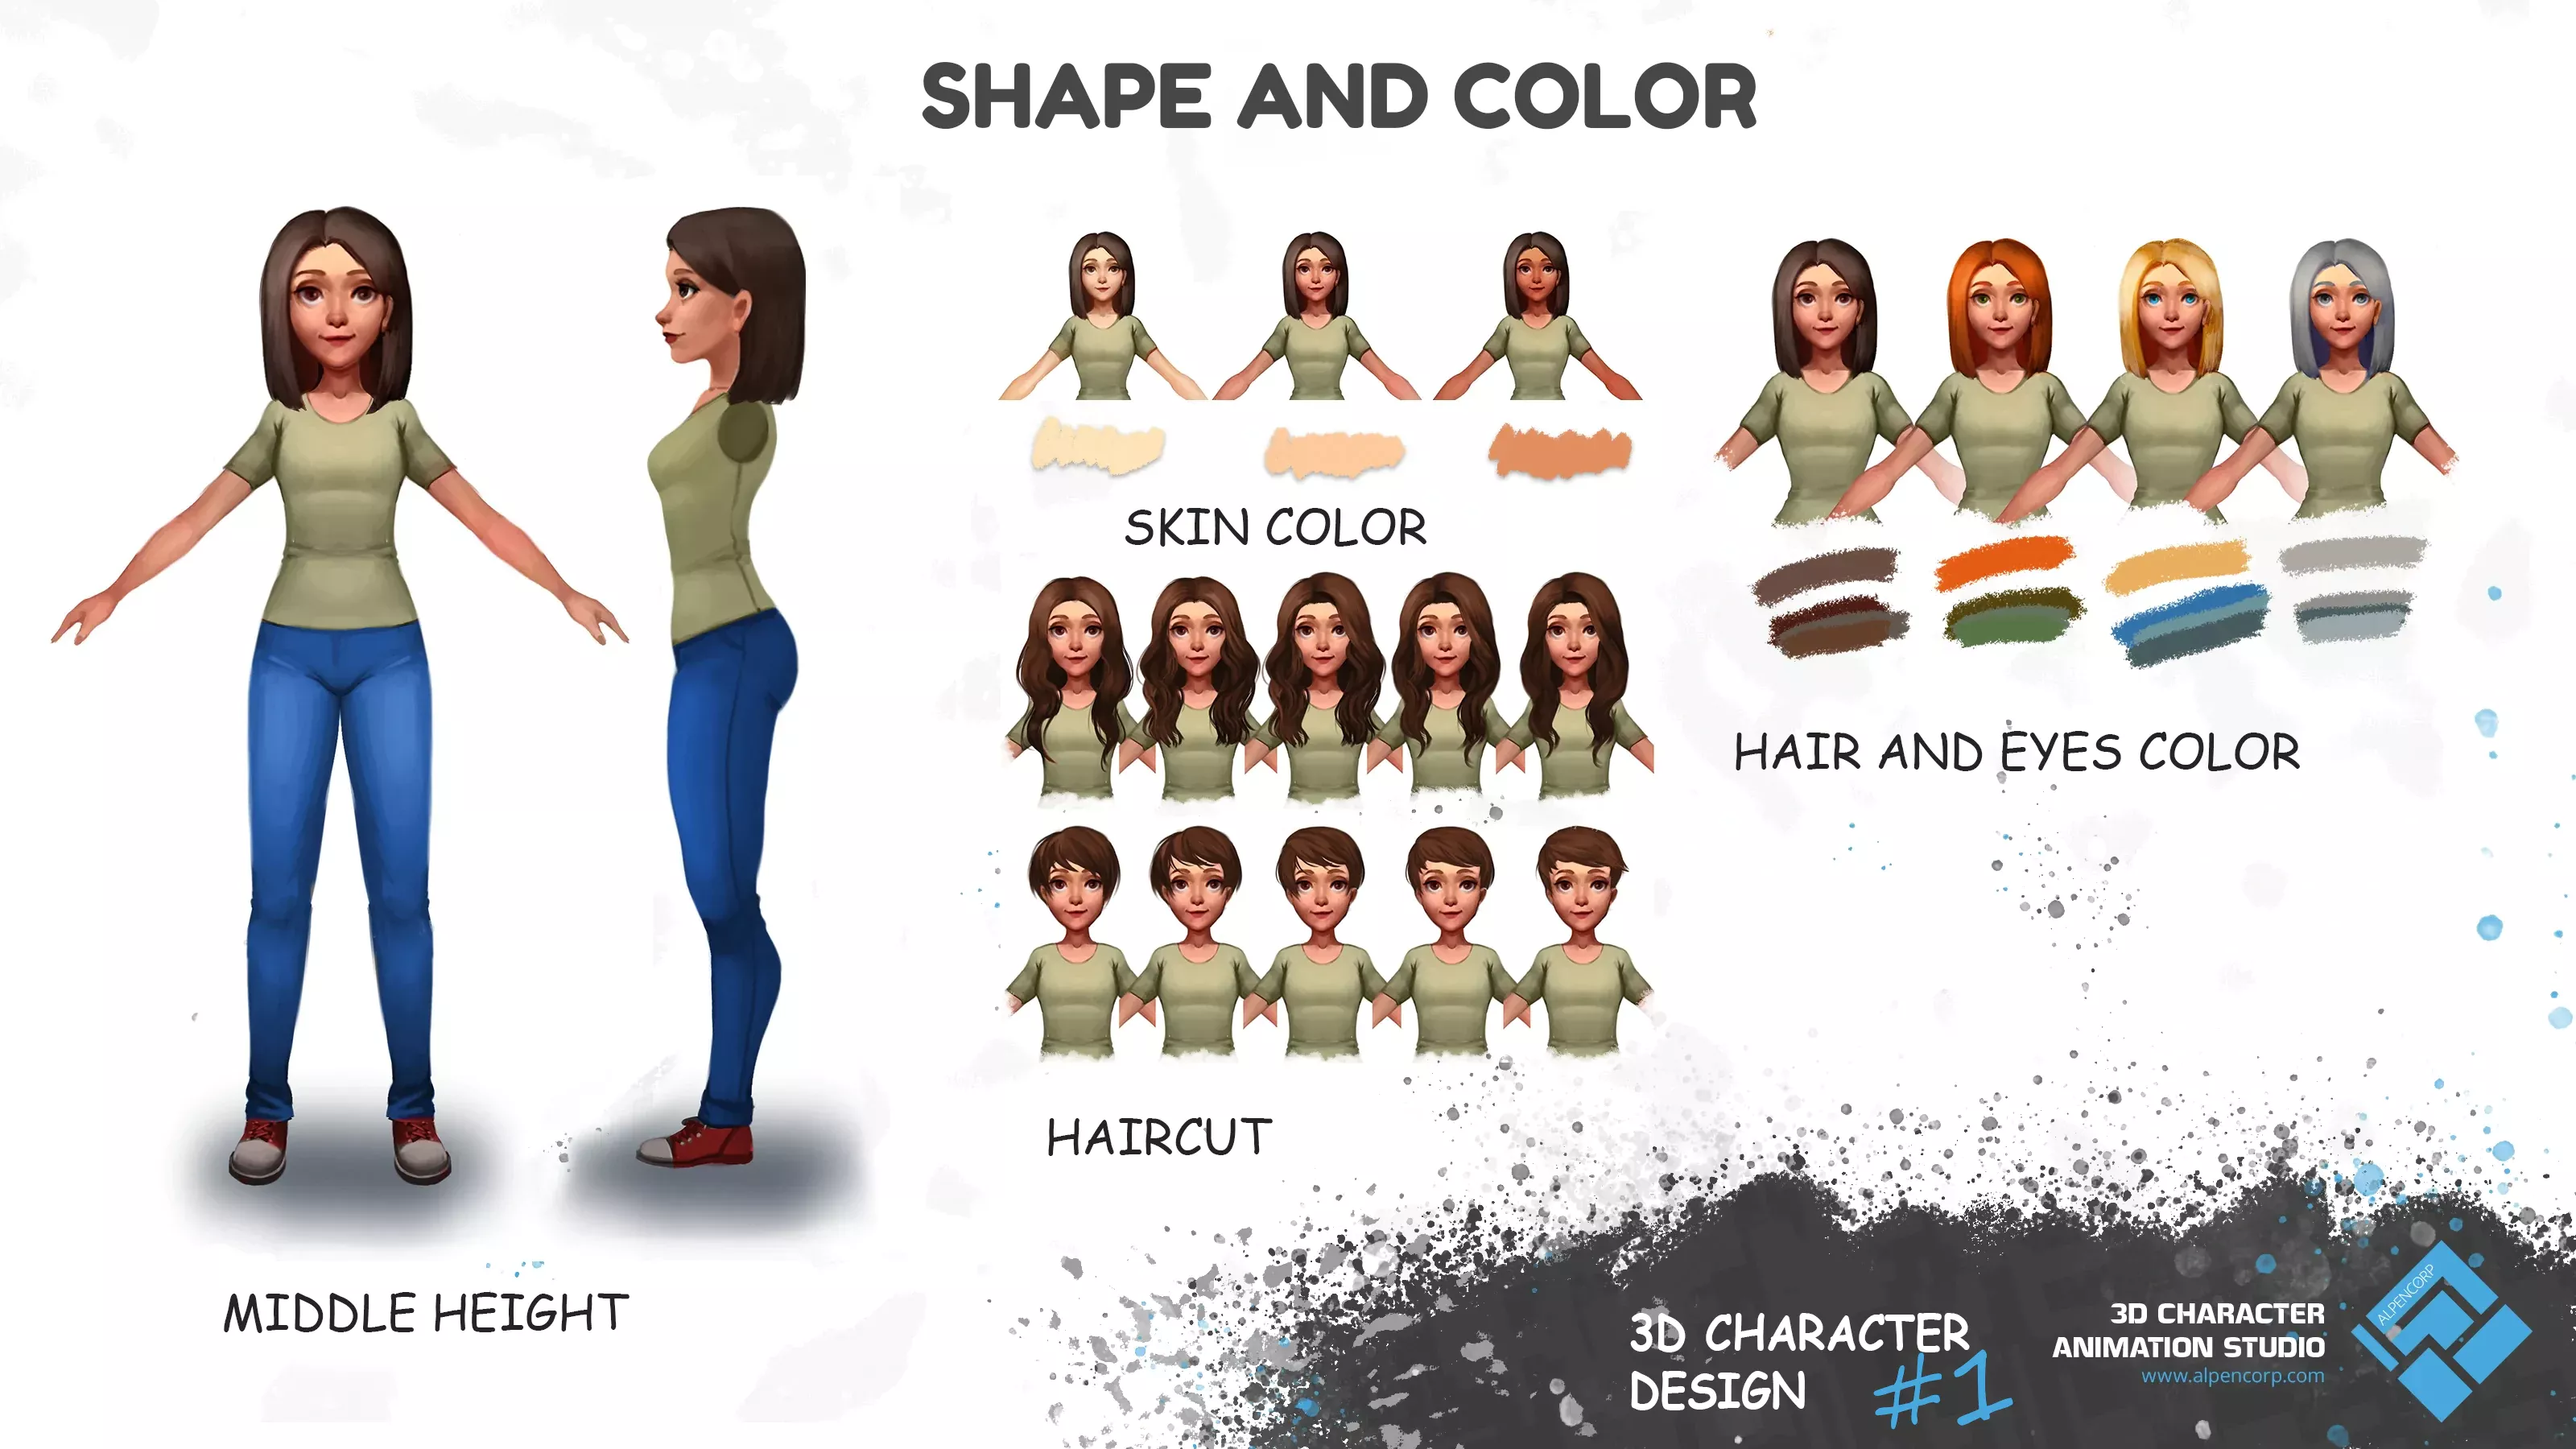 Das Konzept-3D-Charakter für den eShop, Vollgesichts- und Profilansichten sowie Farbvarianten und Frisuren.